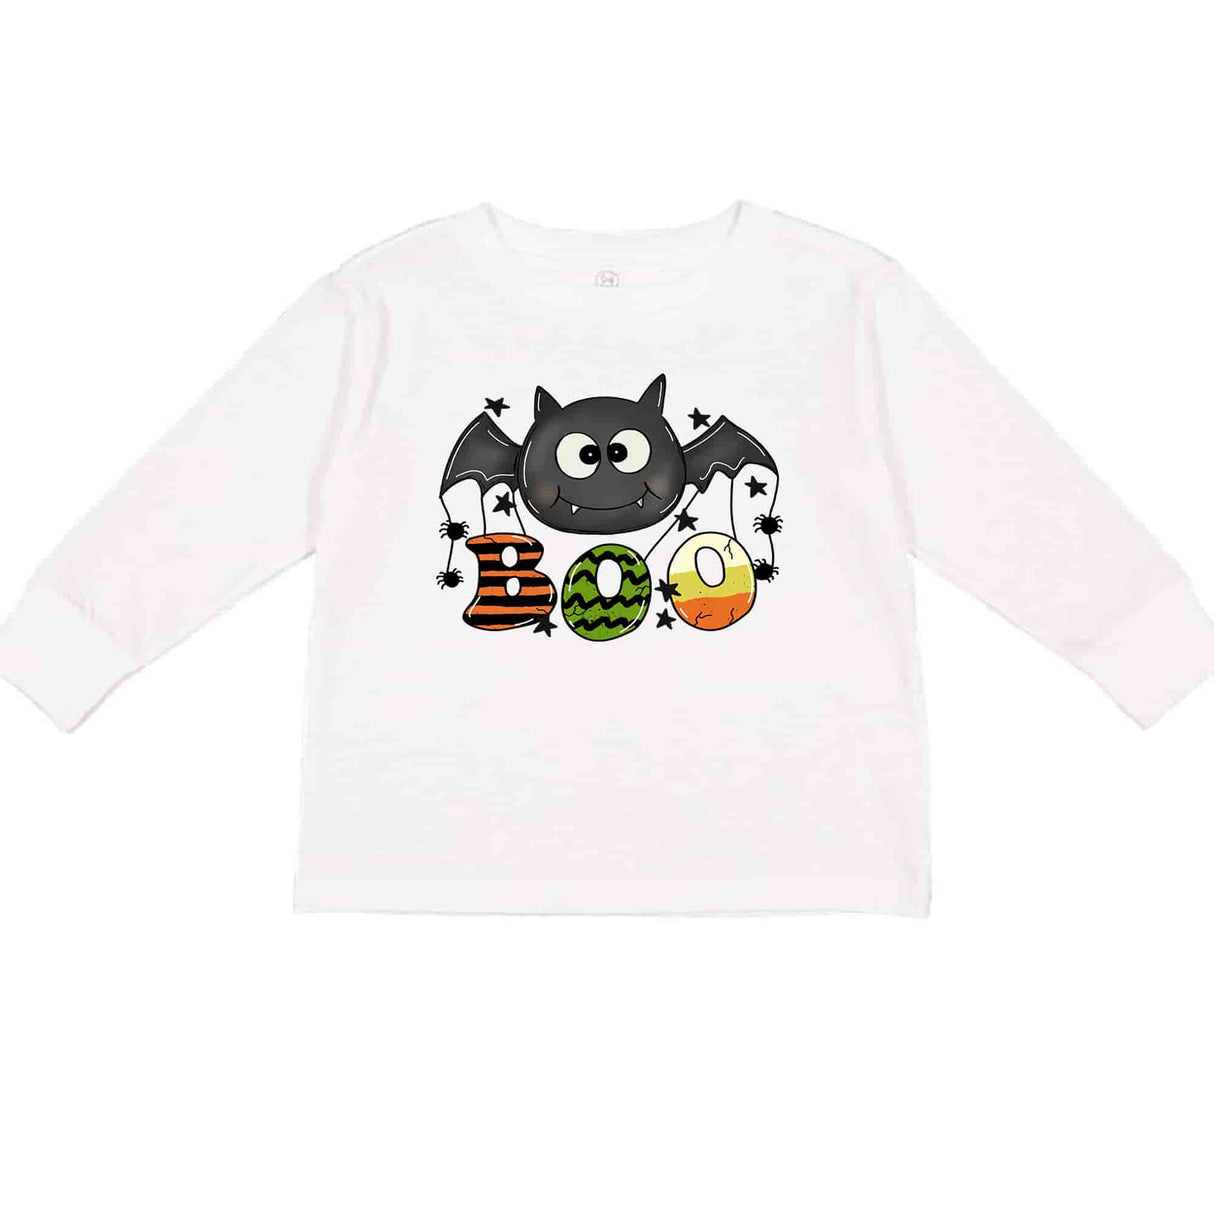 Boy Bat Boo T-shirt